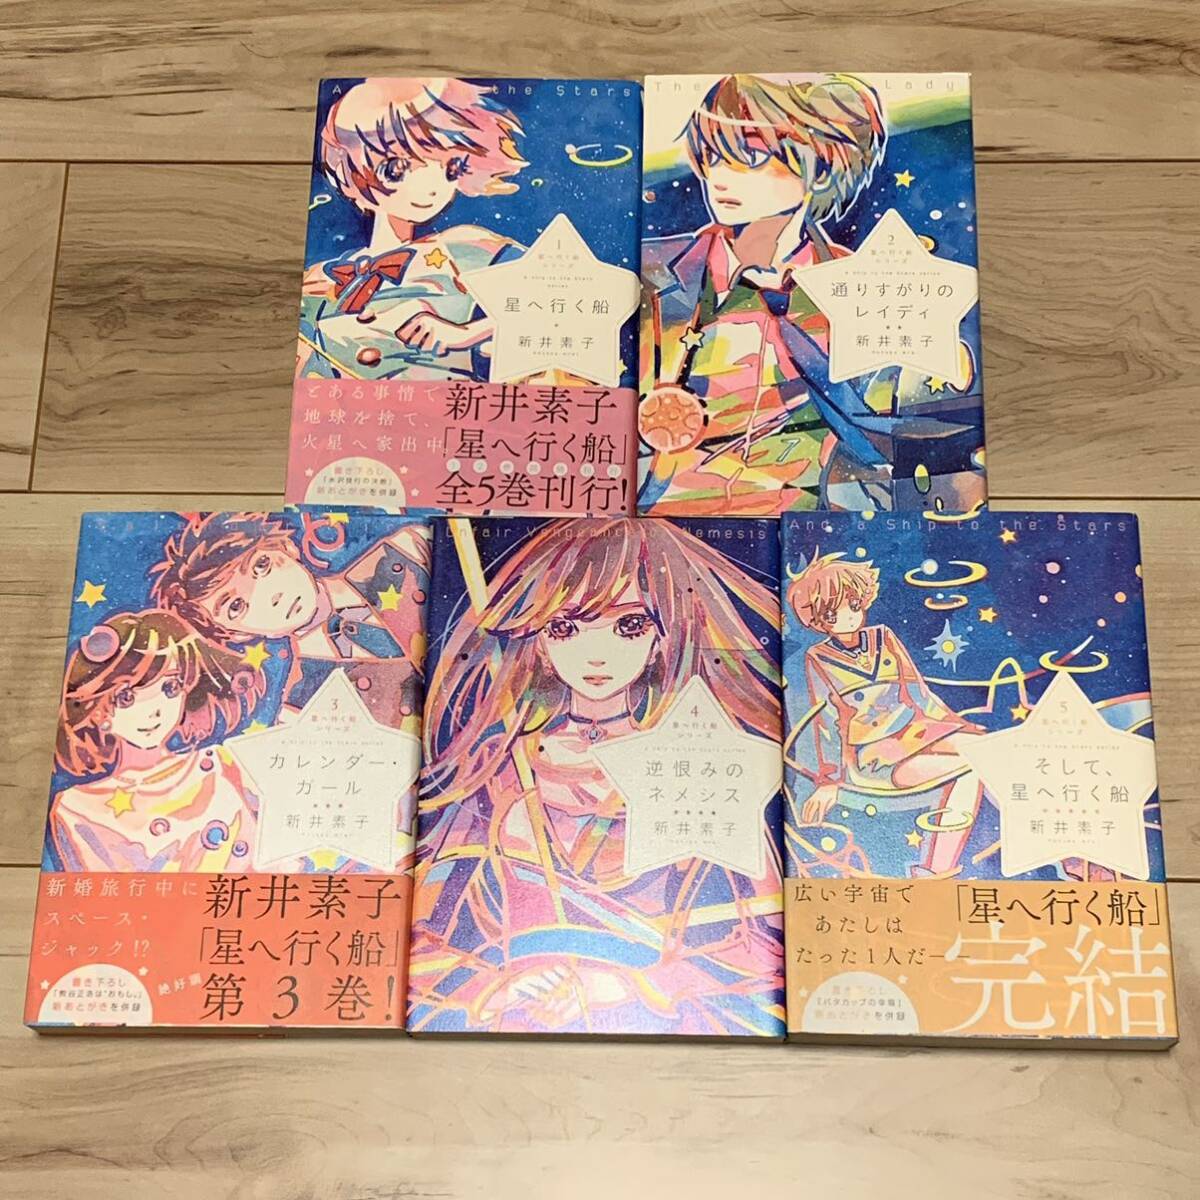 新井素子 星へ行く船シリーズ全8巻set 出版芸術社刊 SF